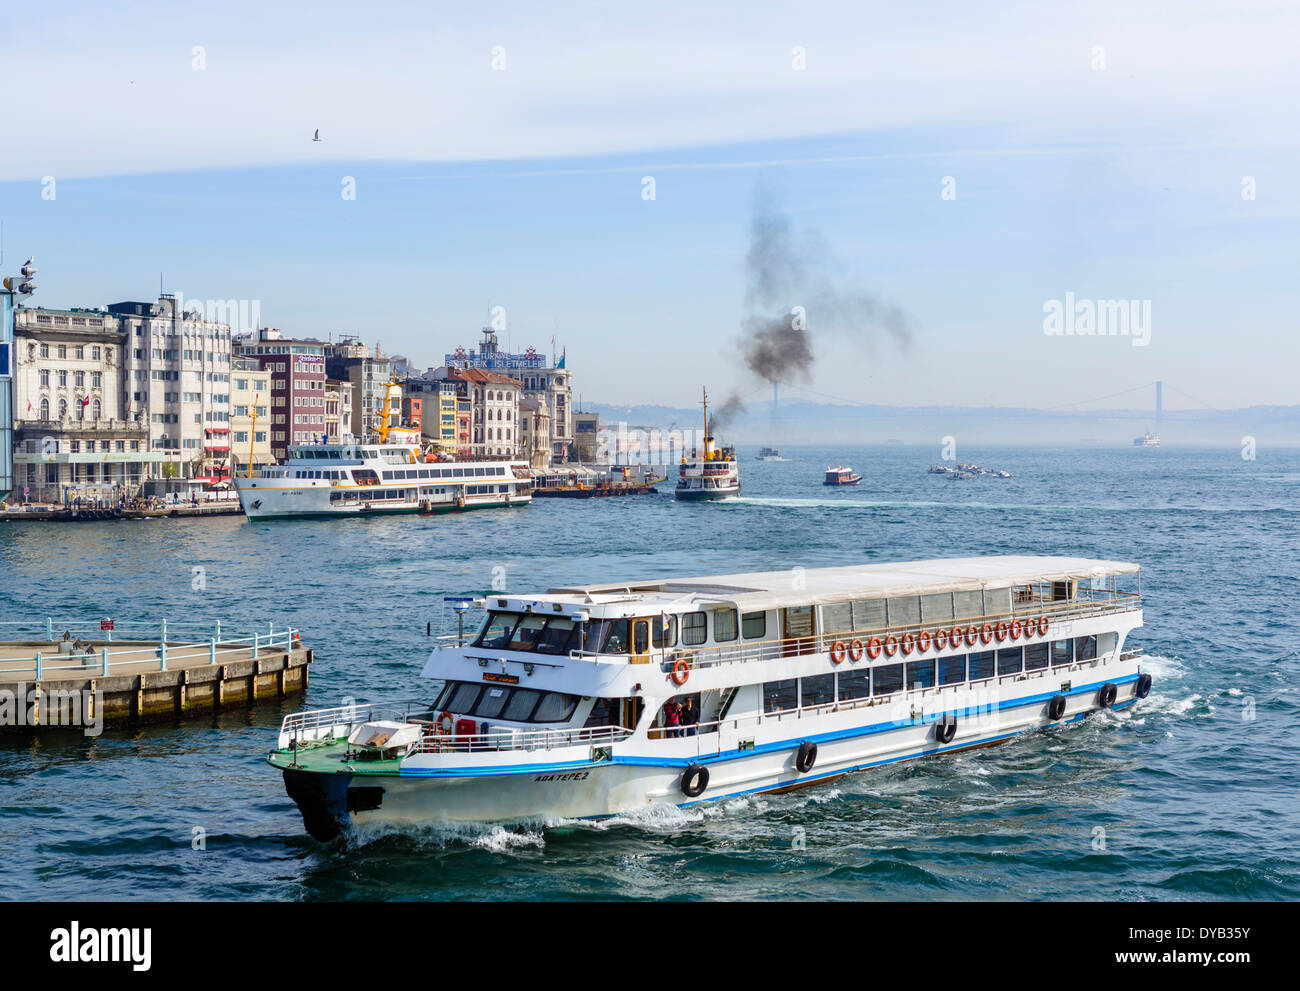 Vista desde el puente de Galata barcos en el Cuerno de Oro, mirando hacia el Bósforo, Estambul, Turquía Foto de stock